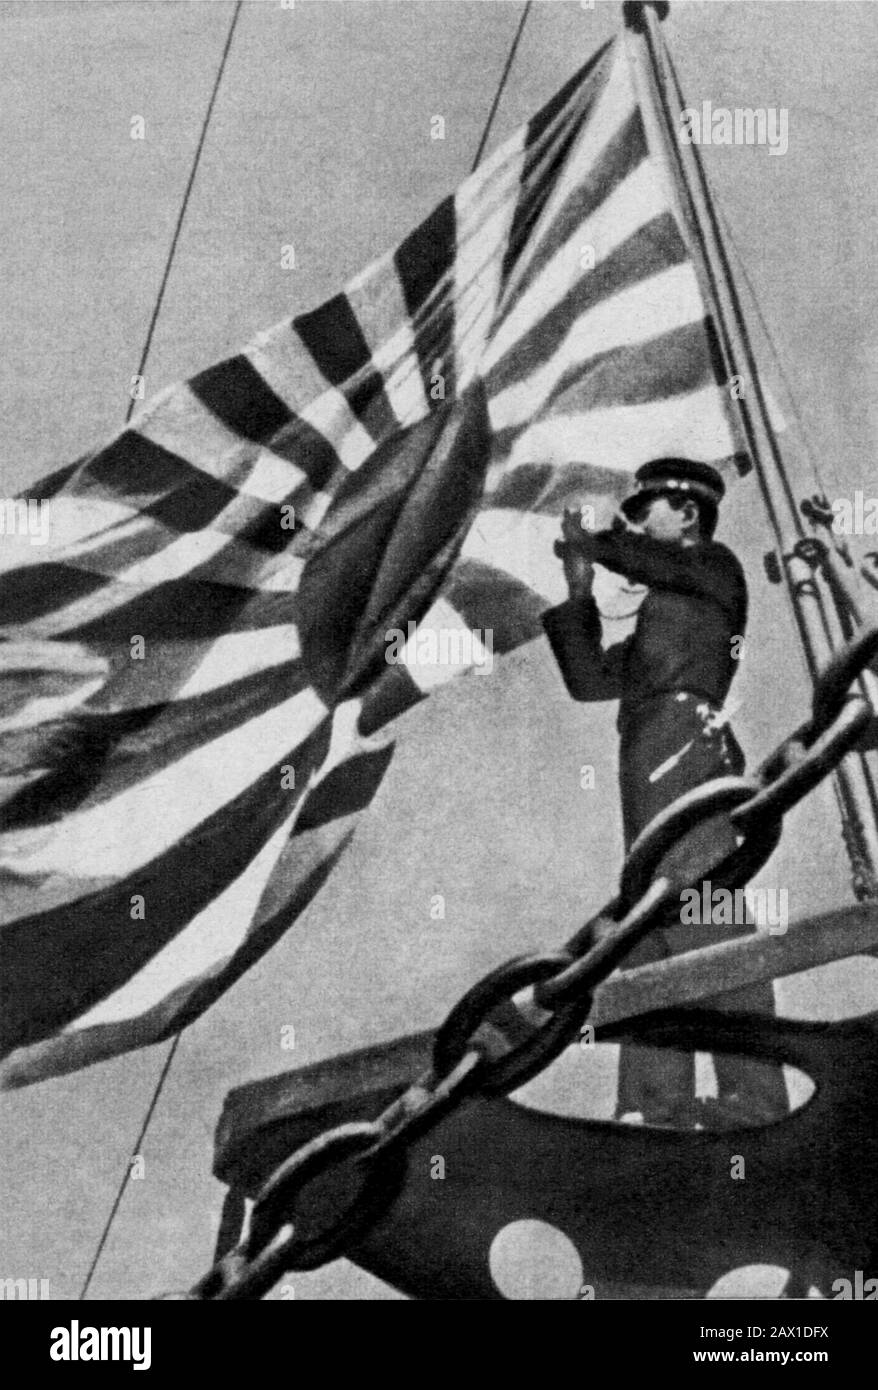 1942 , 6 june , USA : Guard of a Japan aircraft carrier navy - MIDWAY BATTLE - WORLD WAR II - WWII - SECONDA GUERRA MONDIALE - foto storiche  storica - HISTORY PHOTOS   - Stati Uniti d' America - bombardamento - nave - Marina - Navy - mare - sea - attacco aereo - USA - GIAPPONE - GUERRA DEL PACIFICO - OCEANO - OCEAN PACIFIC - BATTAGLIA - BATTLE - Sol Levante - bandiera - flag - binocolo  ---- ARCHIVIO GBB Stock Photo